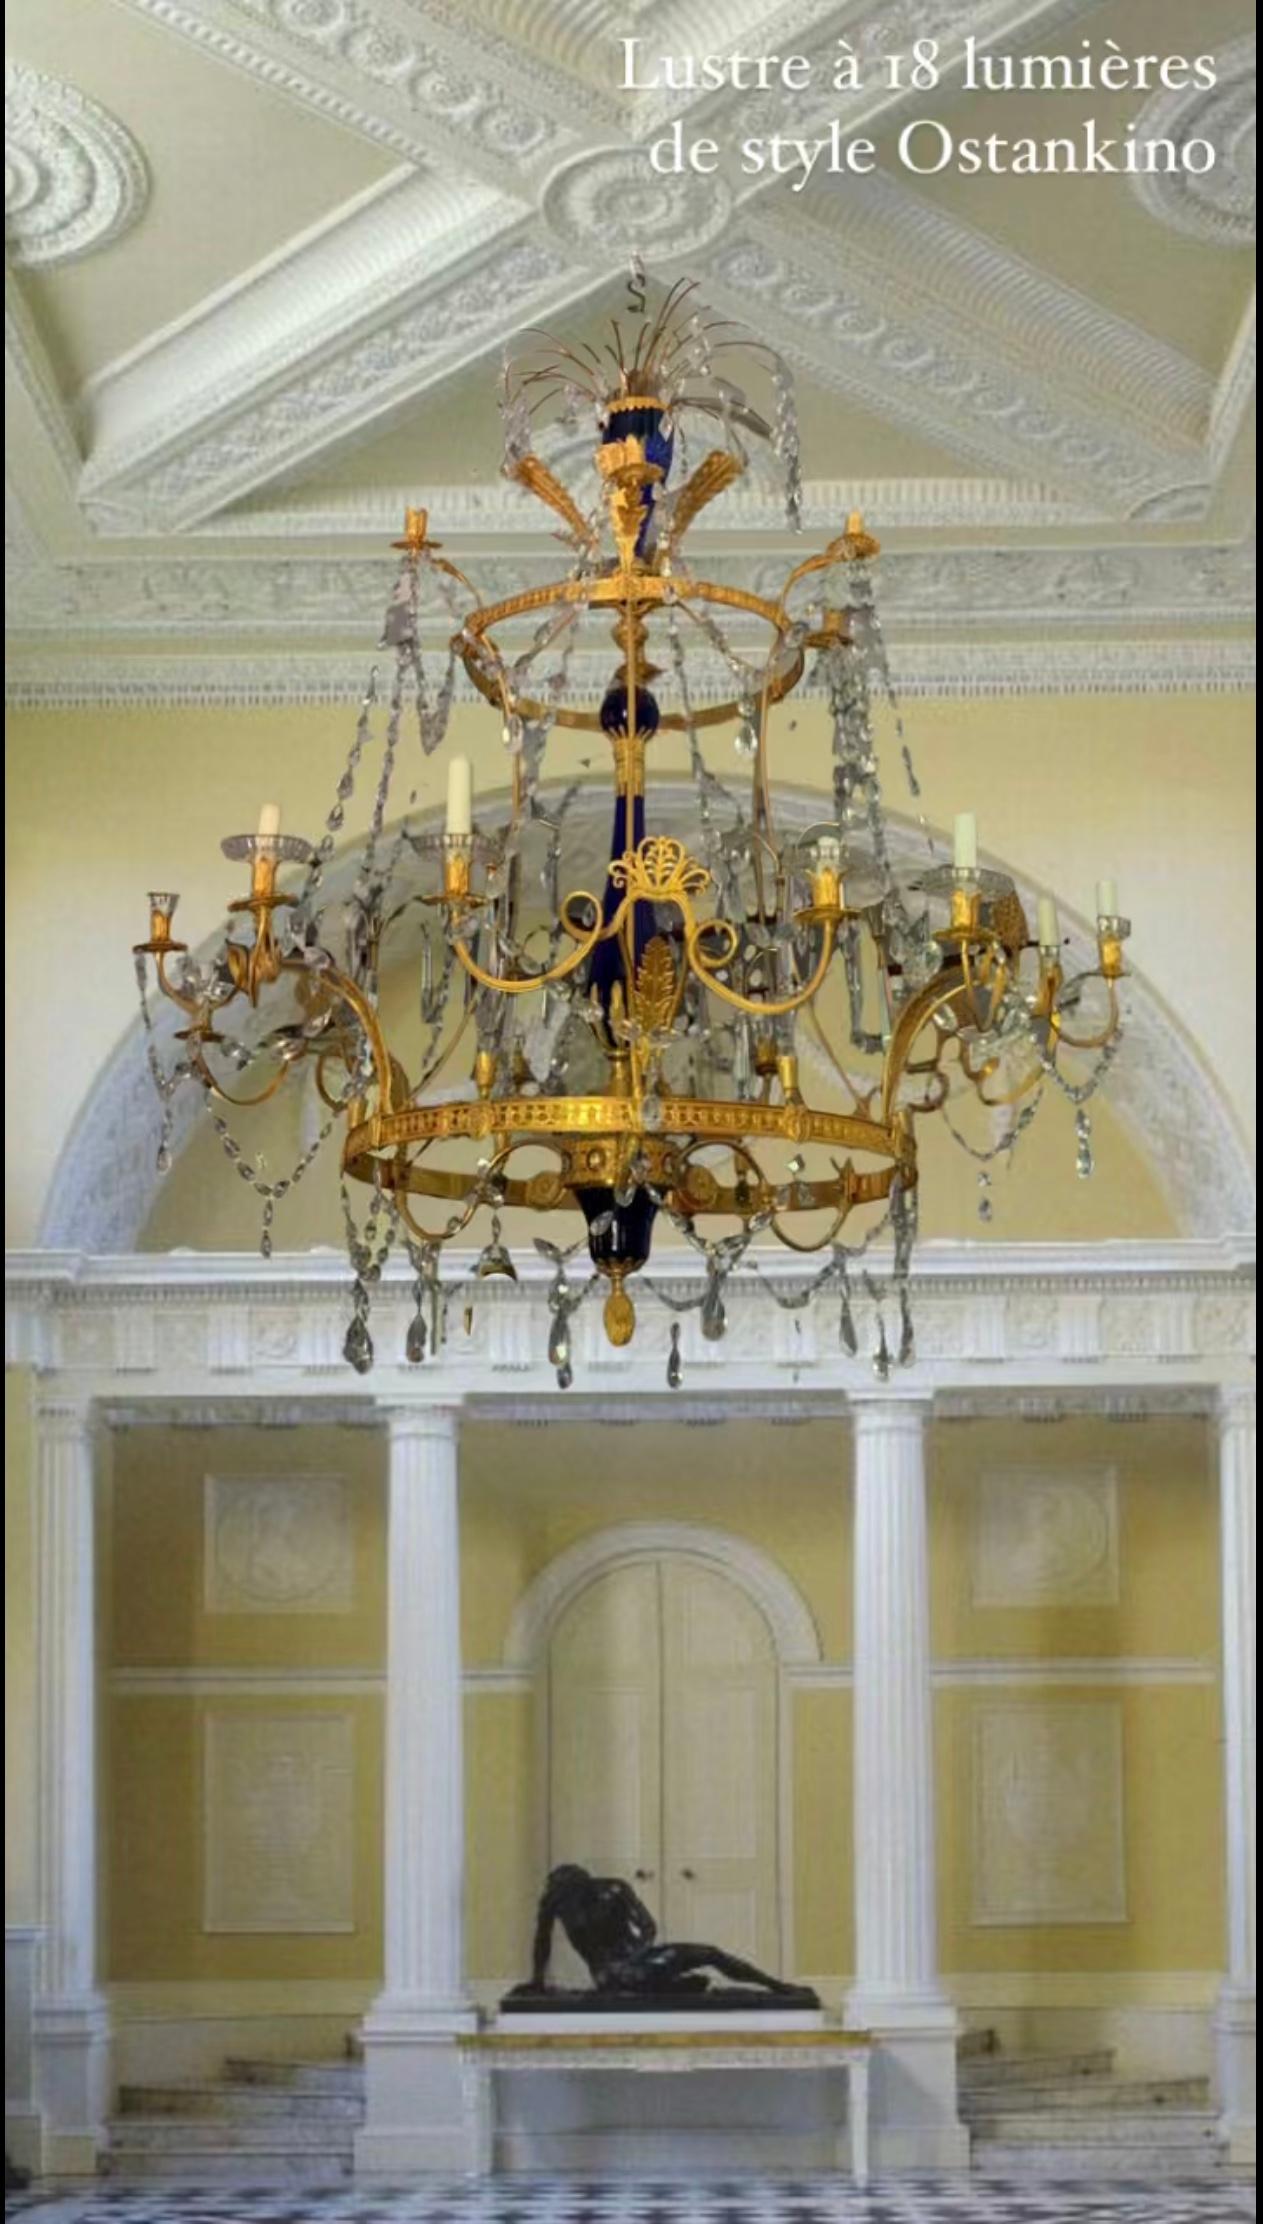 L'un des exemples les plus élégants de grand lustre de palais de style baltique. Les chutes de cristal des fontaines répondent harmonieusement aux feuilles de bronze doré au feu et aux gracieux vases centraux bleu cobalt. 
Deux rangées de lumières